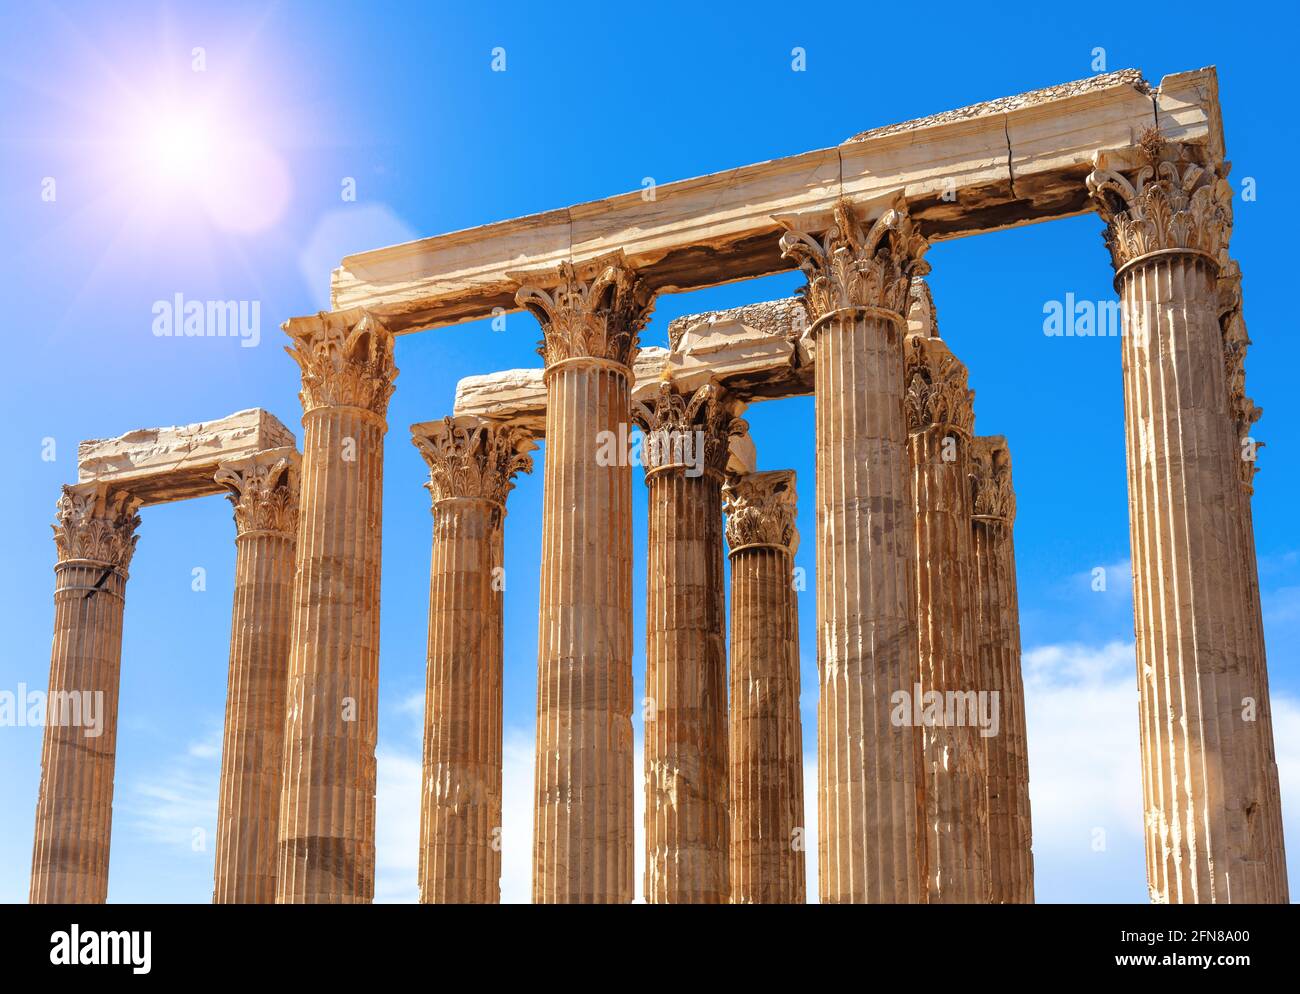 Antiker Tempel des olympischen Zeus im Sonnenlicht, Athen, Griechenland. Dieses alte Denkmal ist ein berühmtes Wahrzeichen Athens. Sonnige Sicht auf korinthische Säulen, Überreste Stockfoto